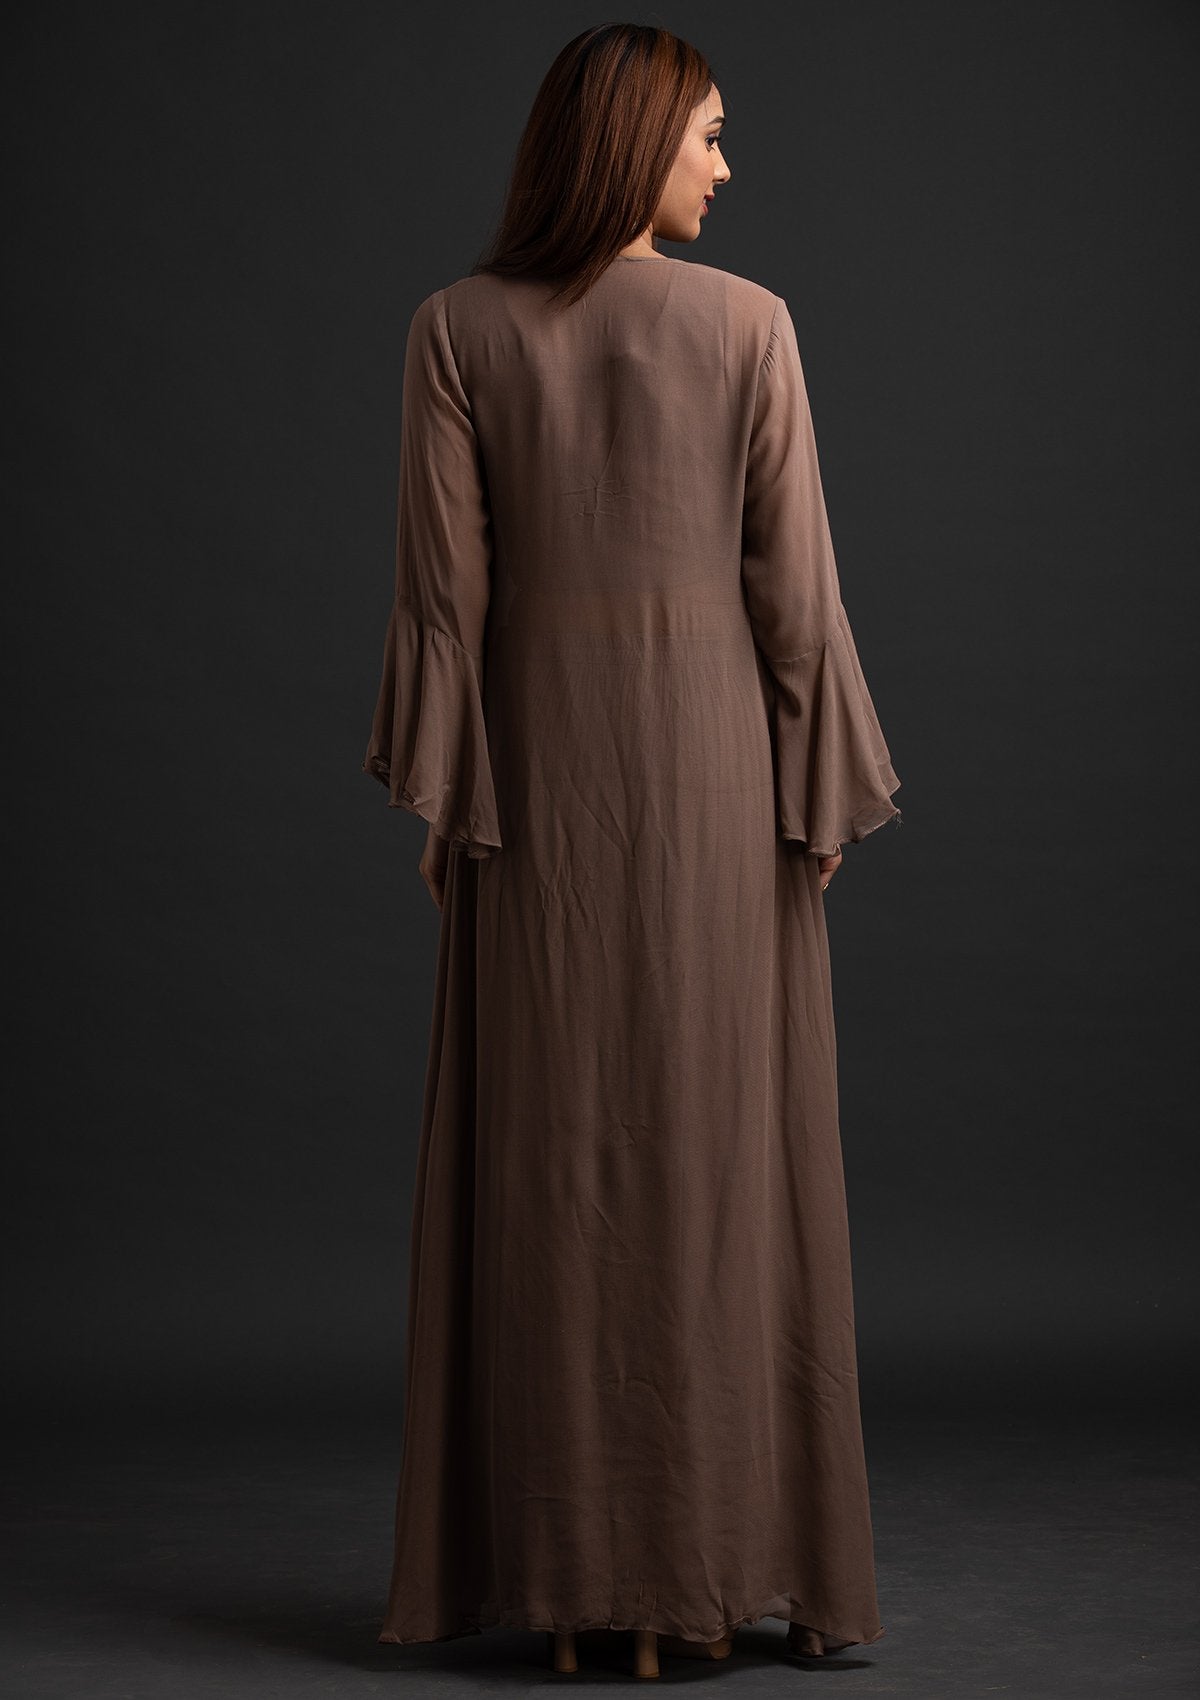 Light Brown Sequins Georgette Designer Salwar-Suit - koskii